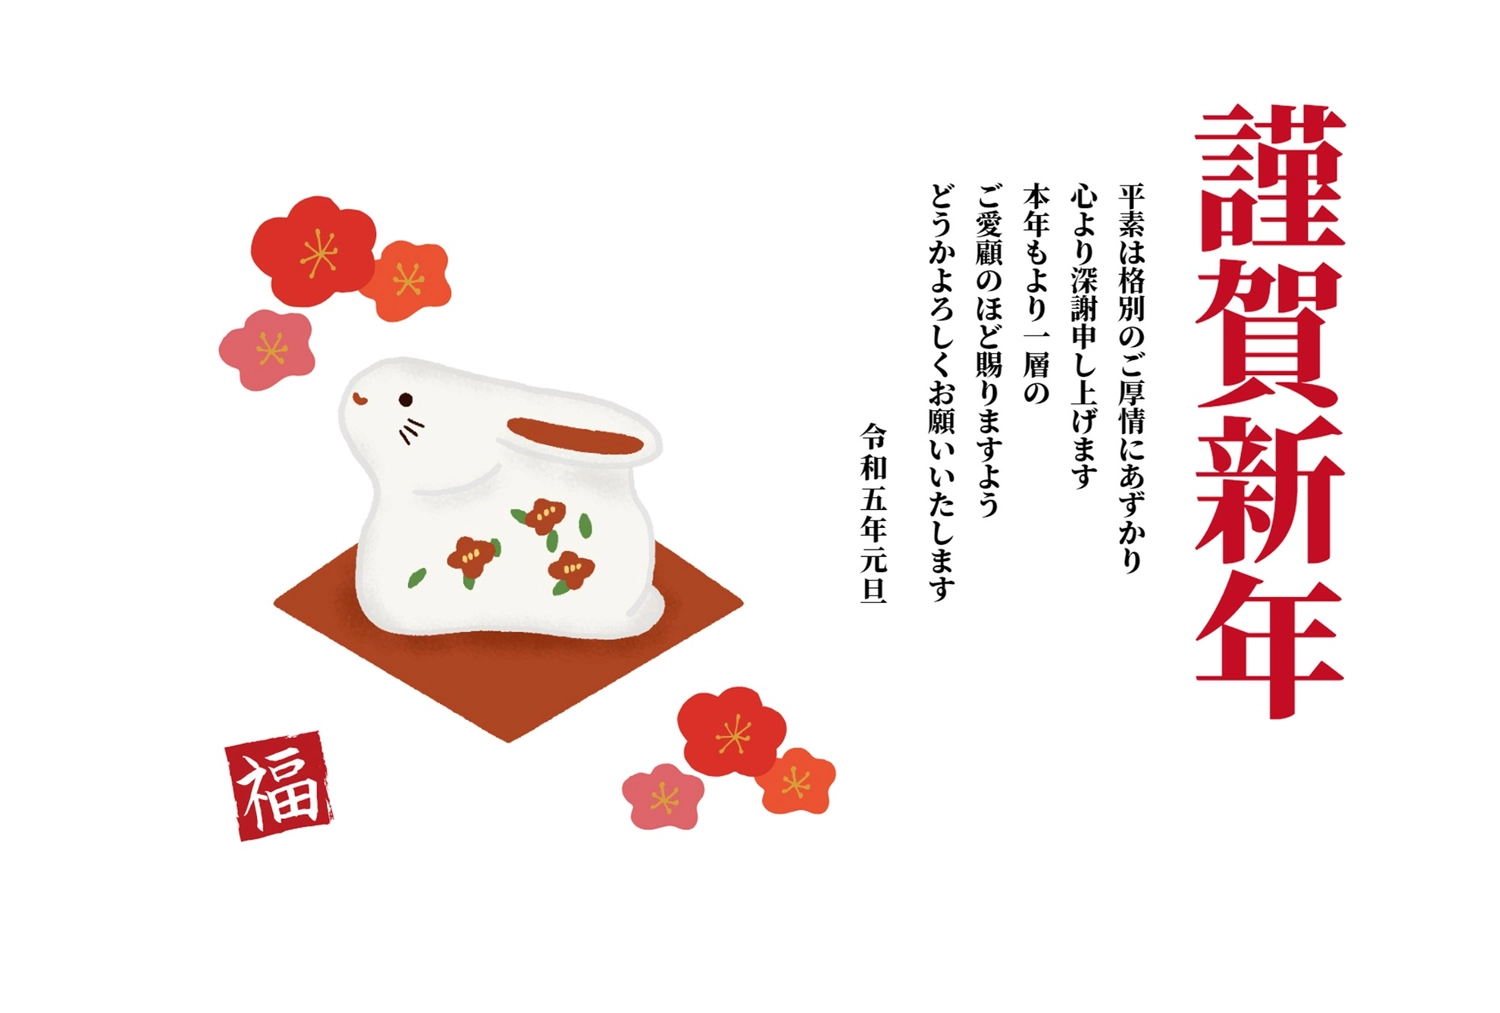 年賀状　うさぎの置物, ornament, Oriental zodiac sign, sign and seal, New Year Card template